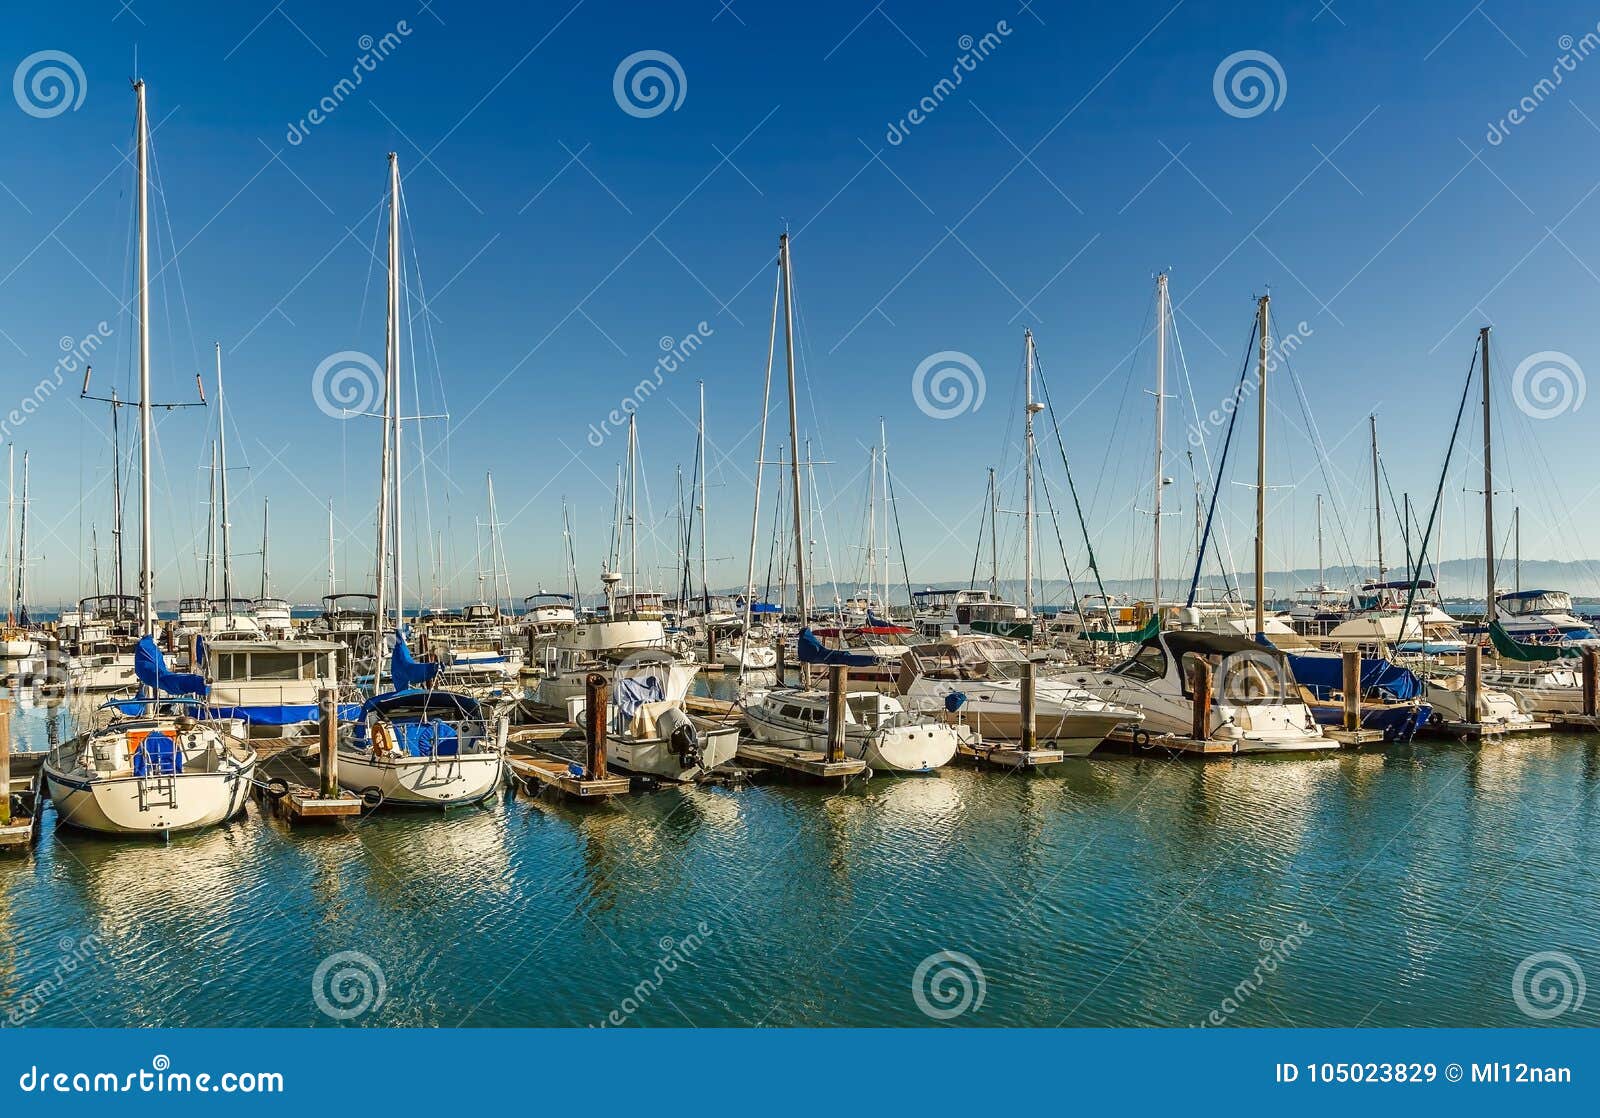 Marina at San Francisco Bay Stock Image - Image of peaceful, hills ...